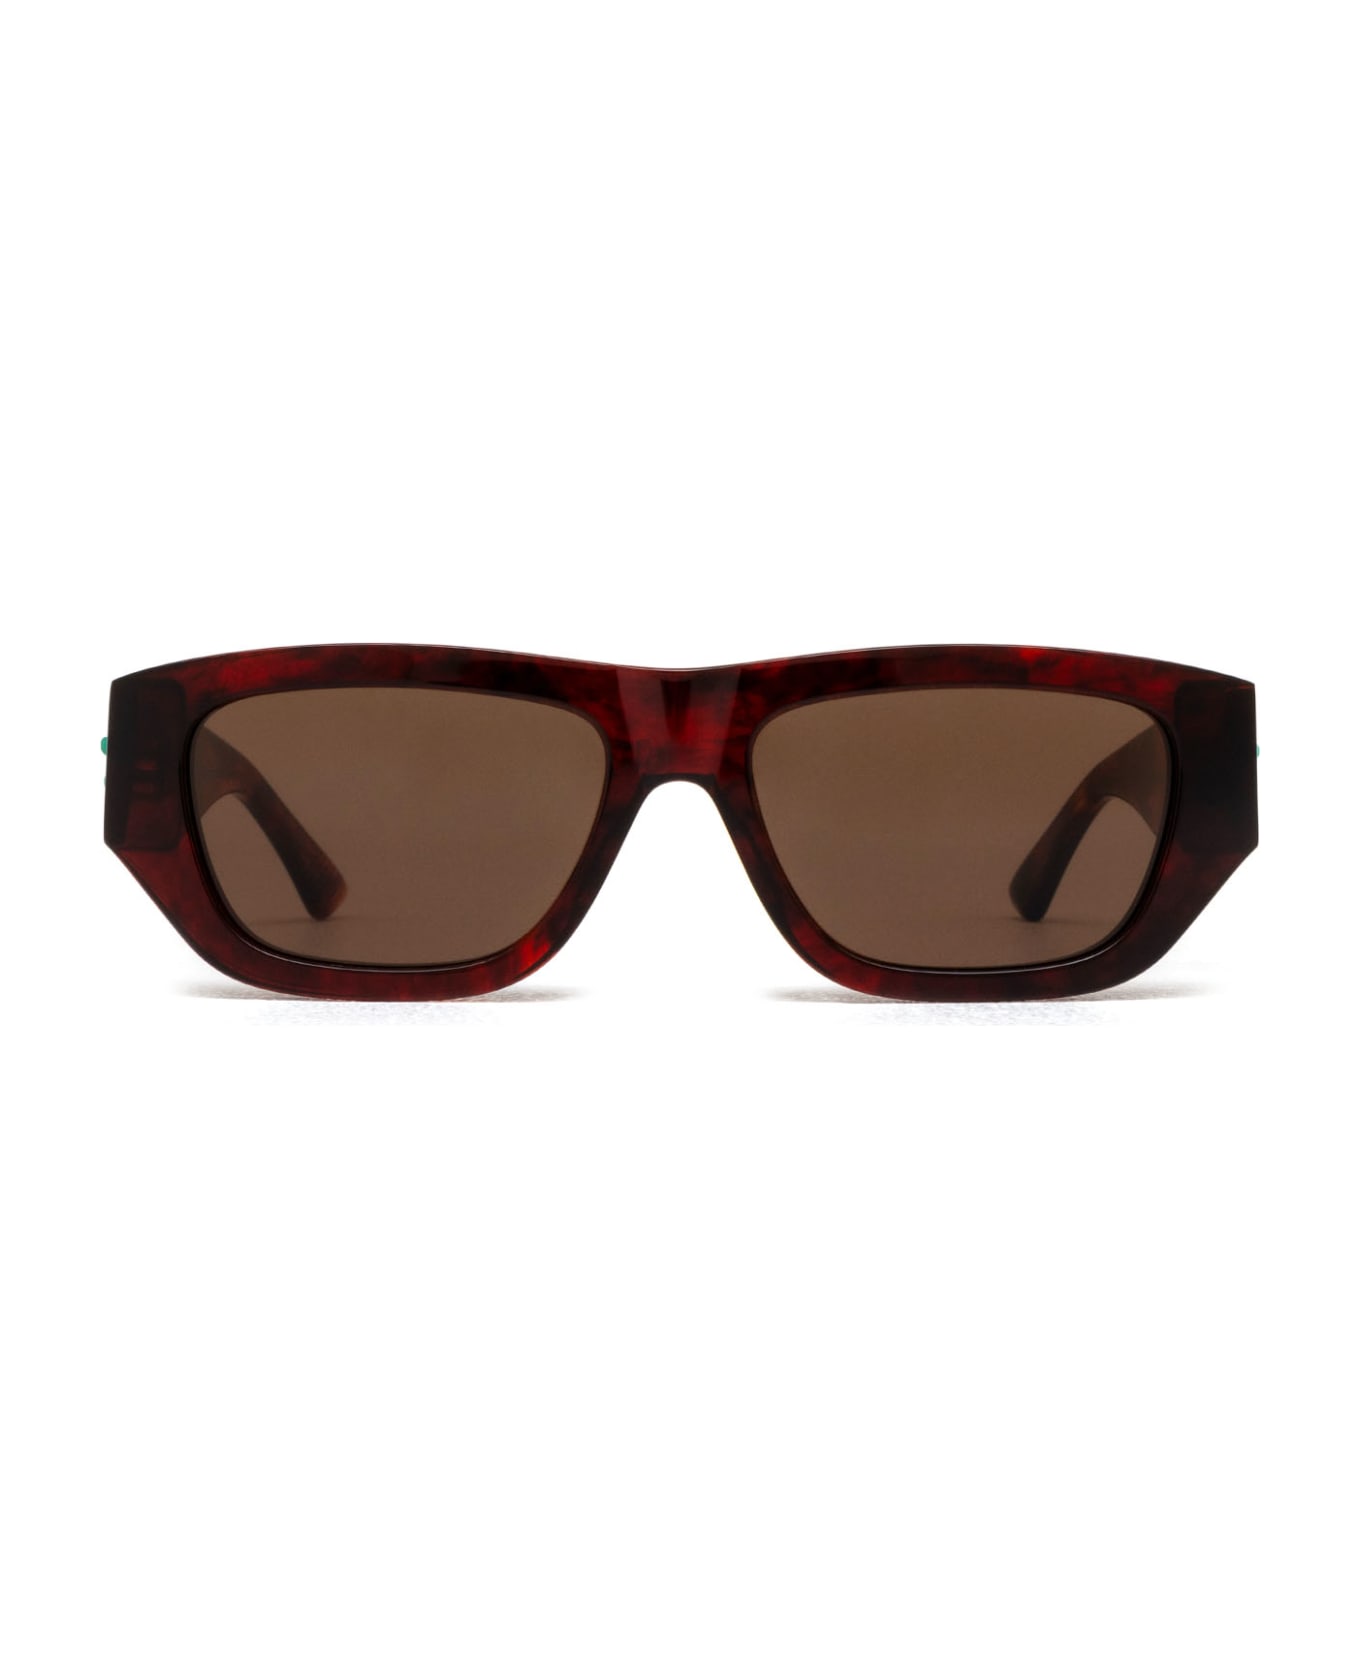 Bottega Veneta Eyewear Bv1252s Havana Sunglasses - Havana